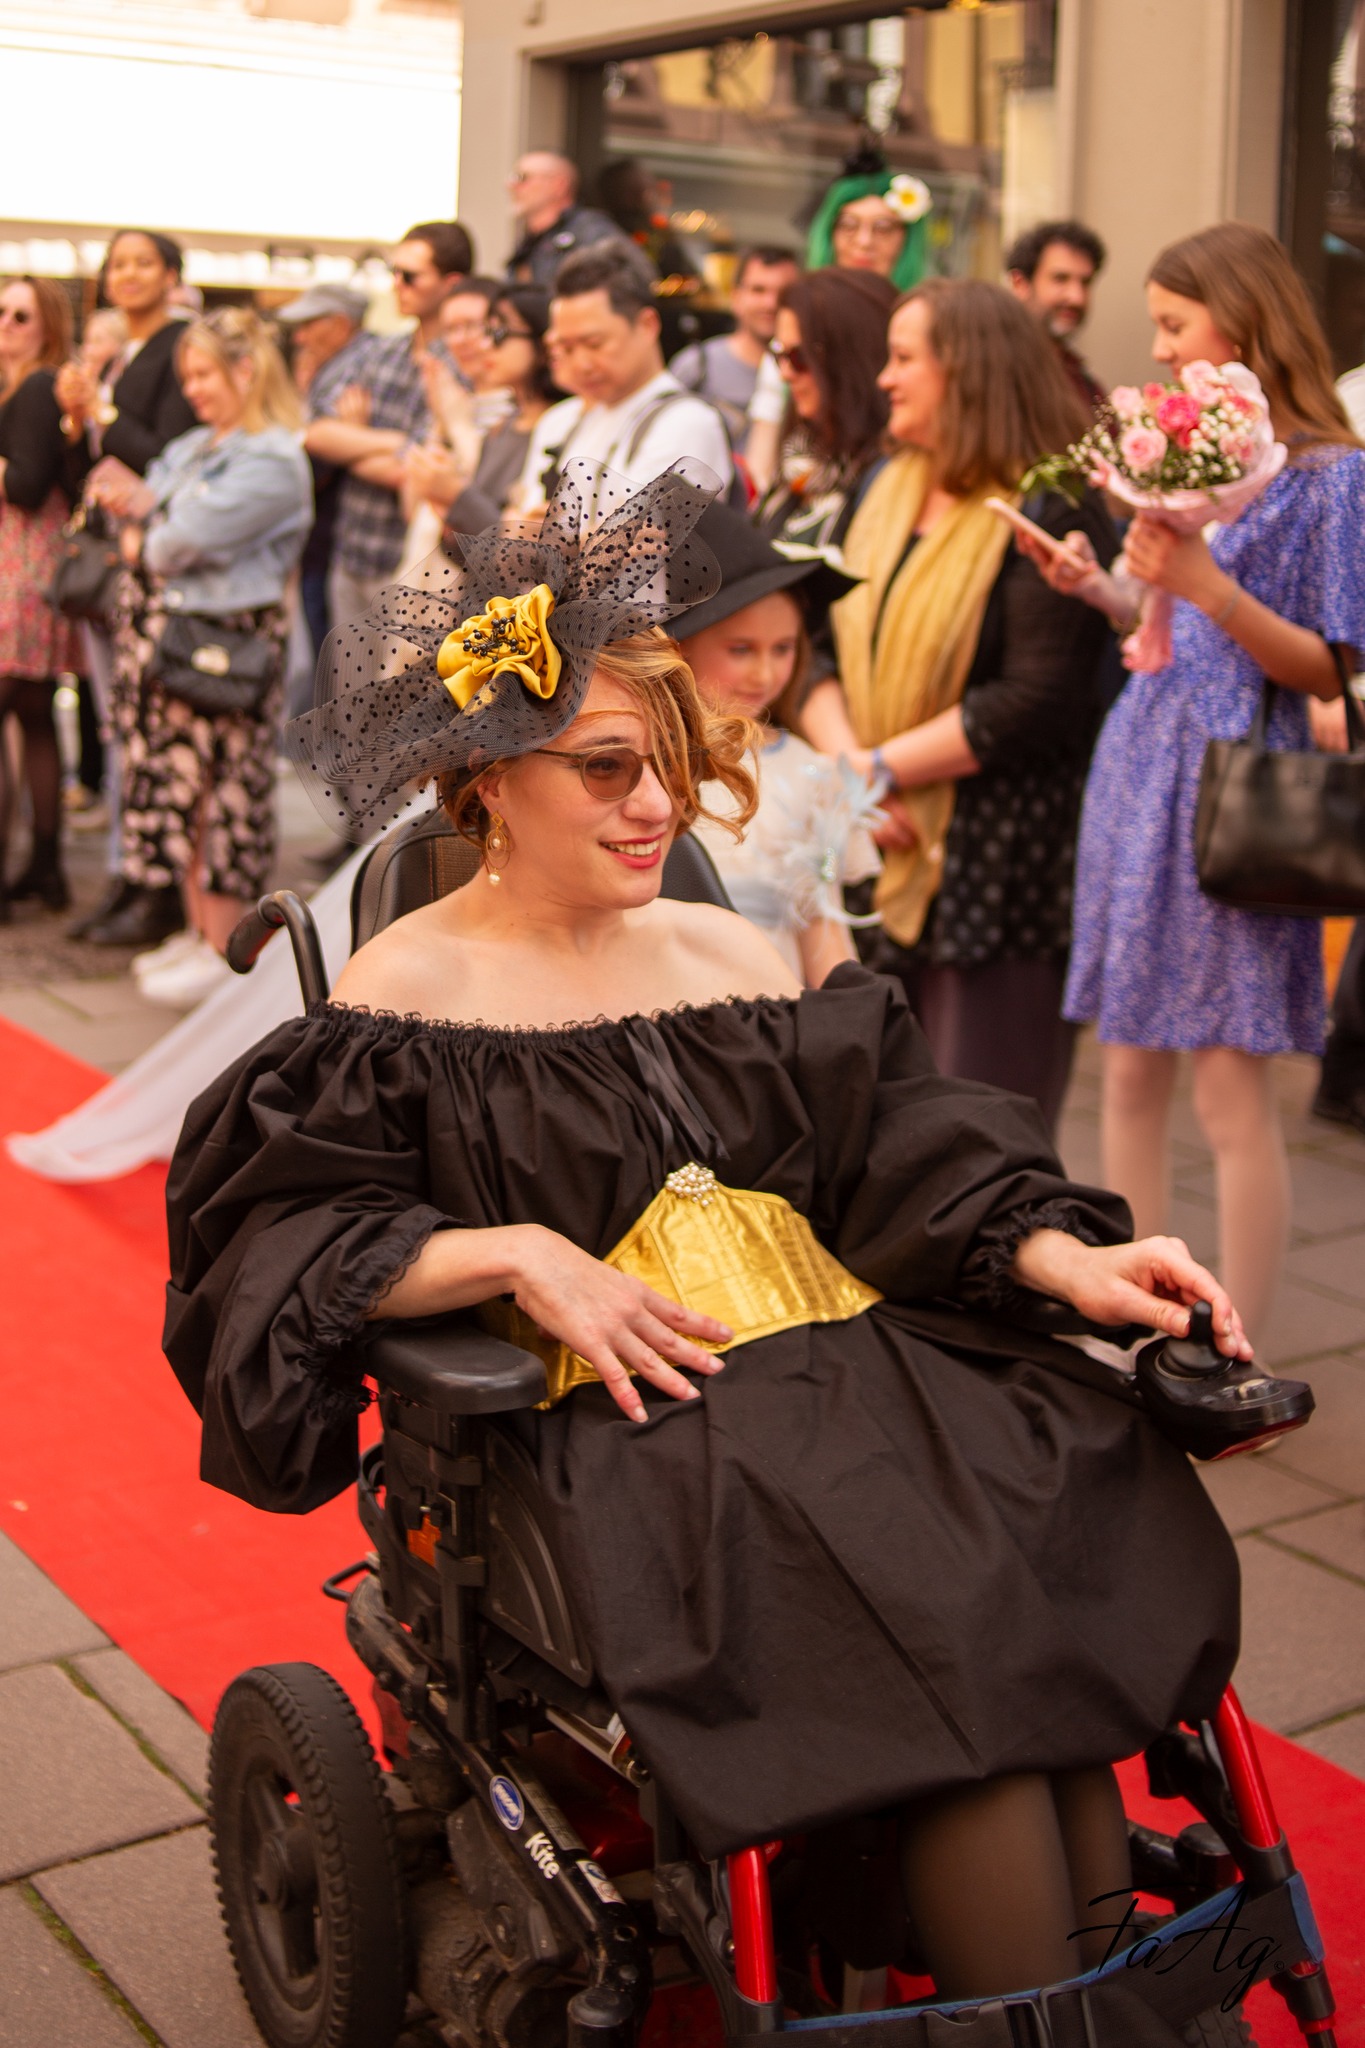 Défilé d'une femme handicapée portant des vêtements adaptés